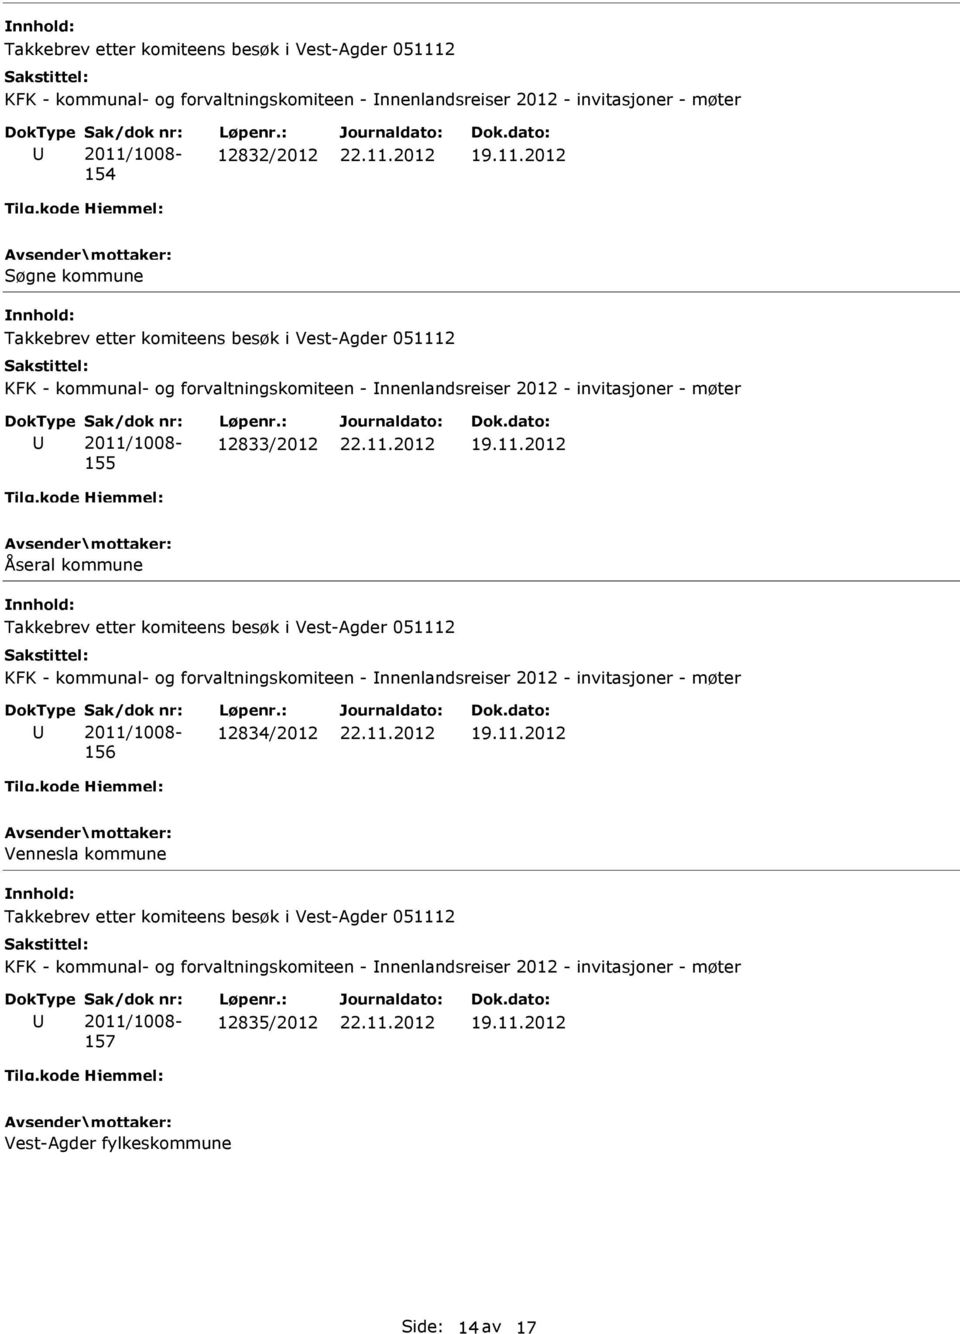 kommunal- og forvaltningskomiteen - nnenlandsreiser 2012 - invitasjoner - møter 156 12834/2012 Vennesla kommune KFK -